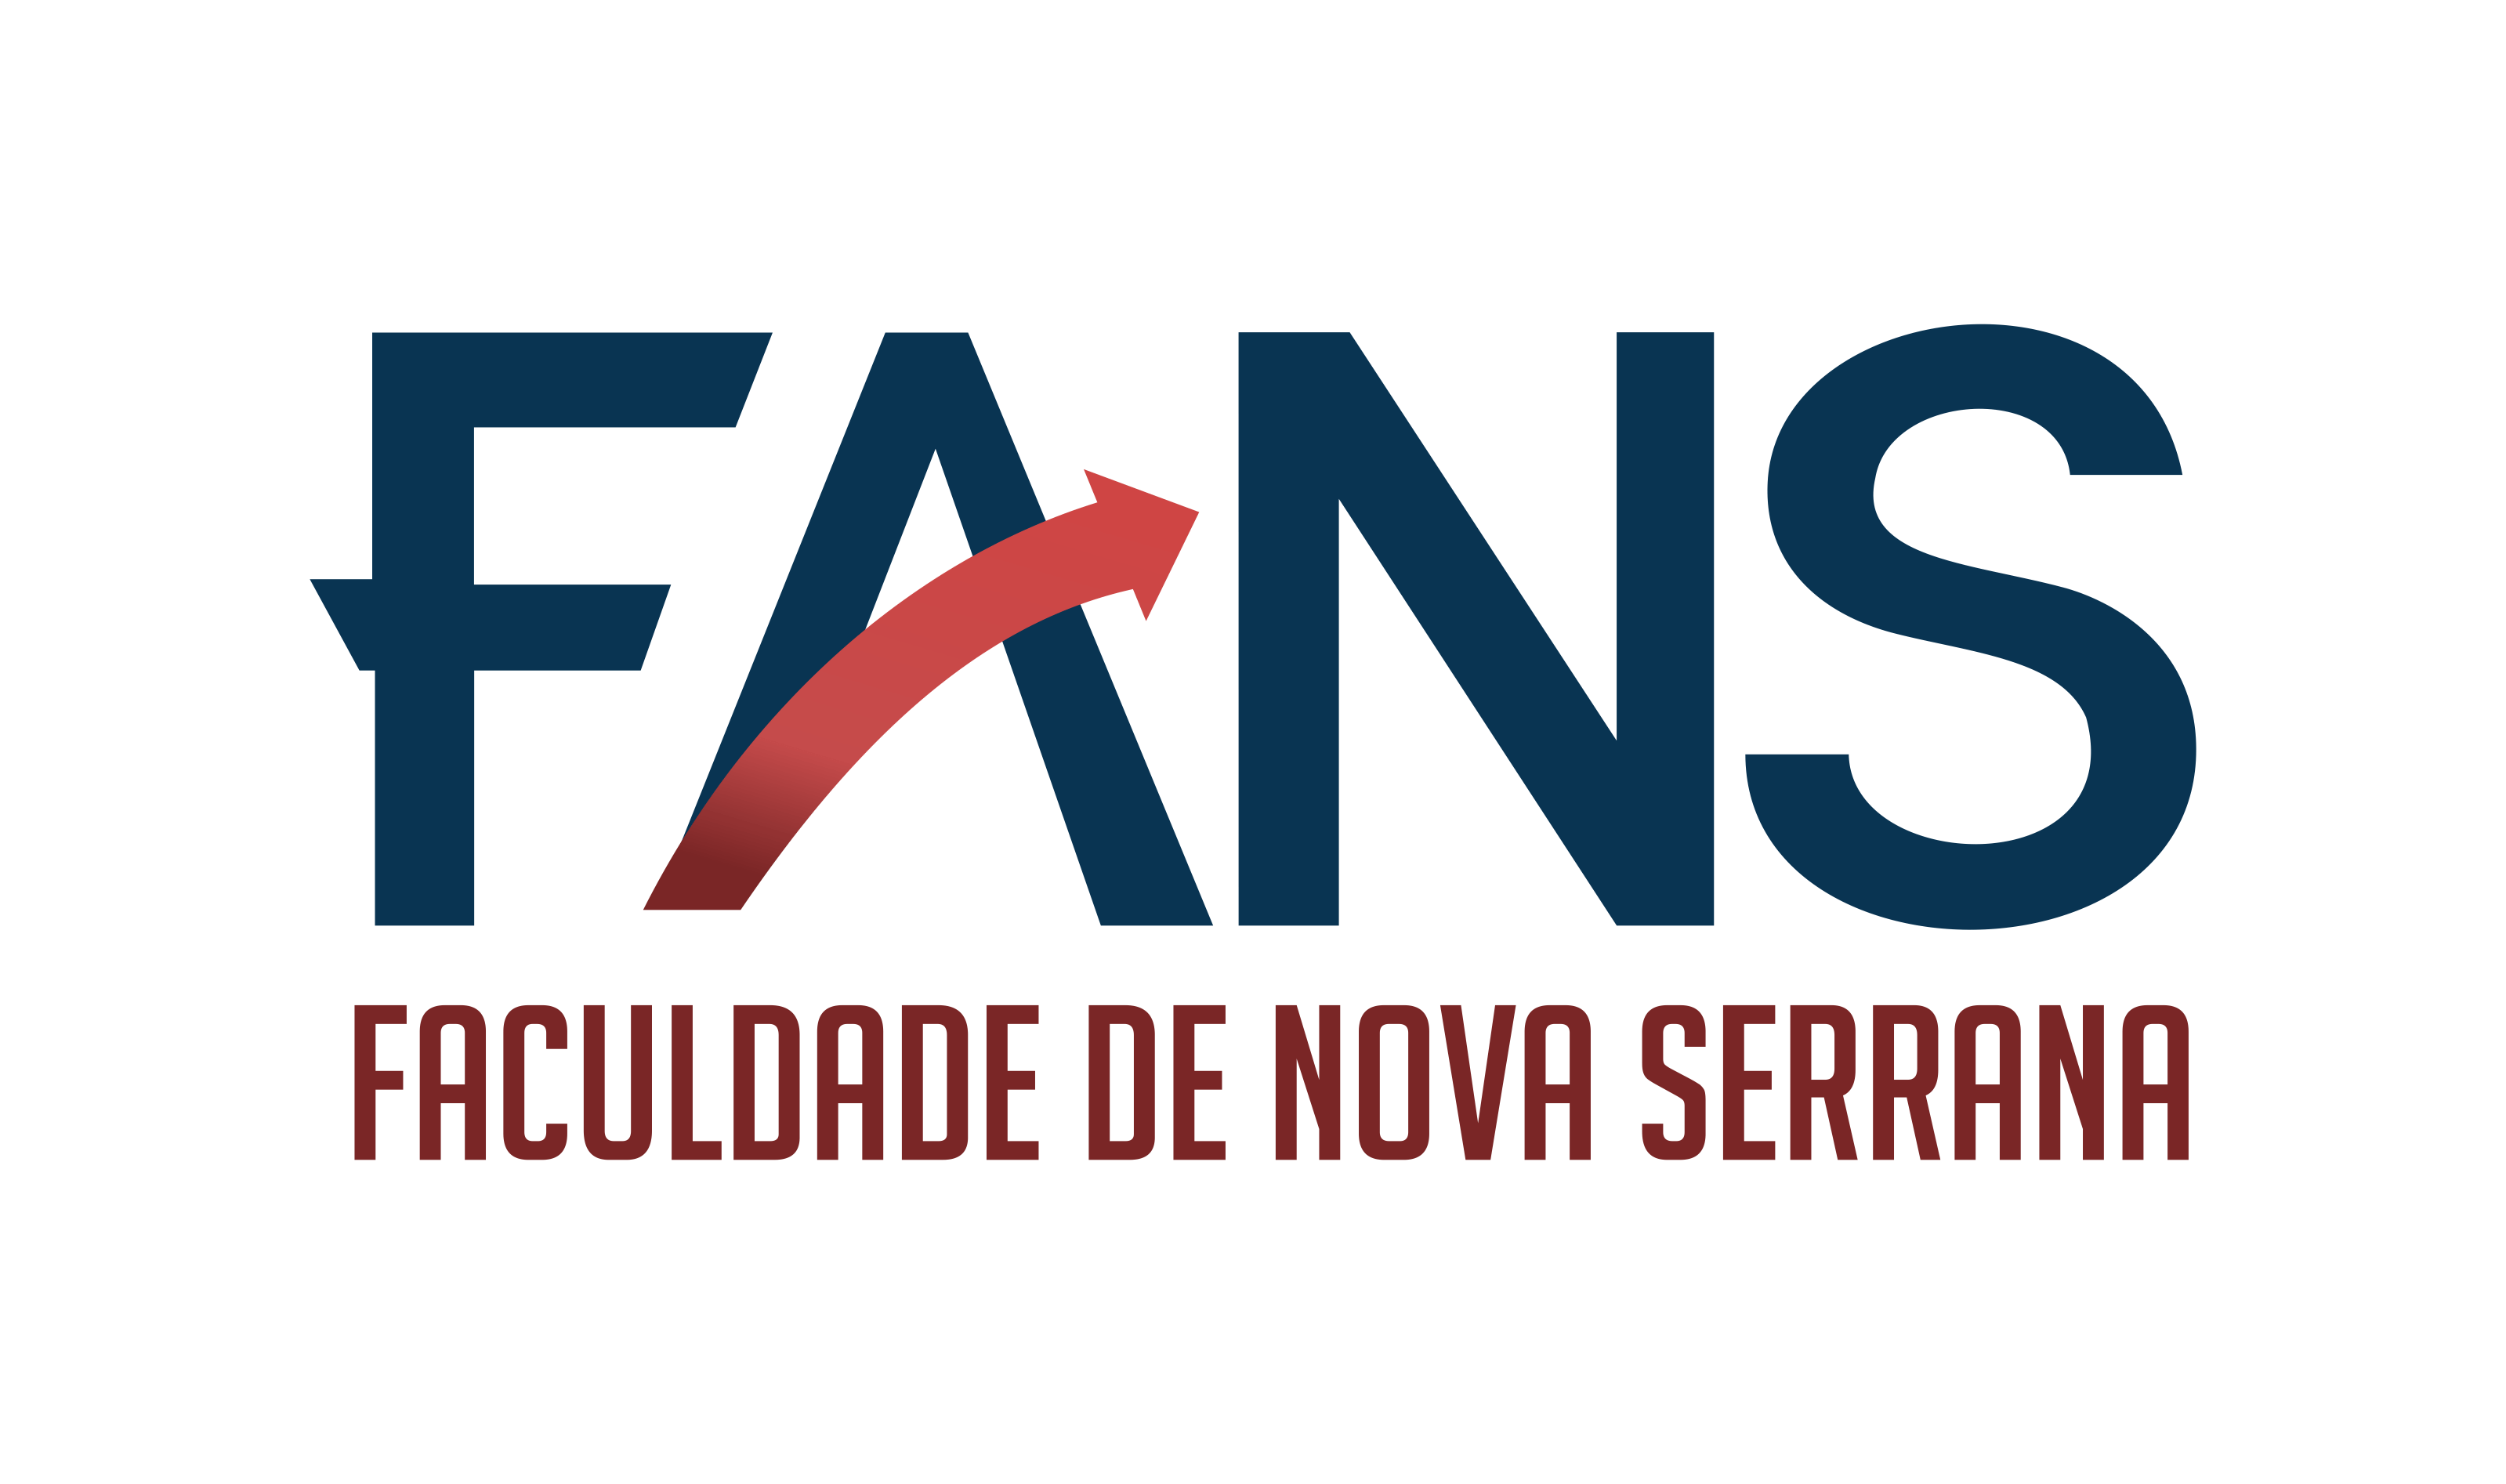 Faculty of Nova Serrana logo